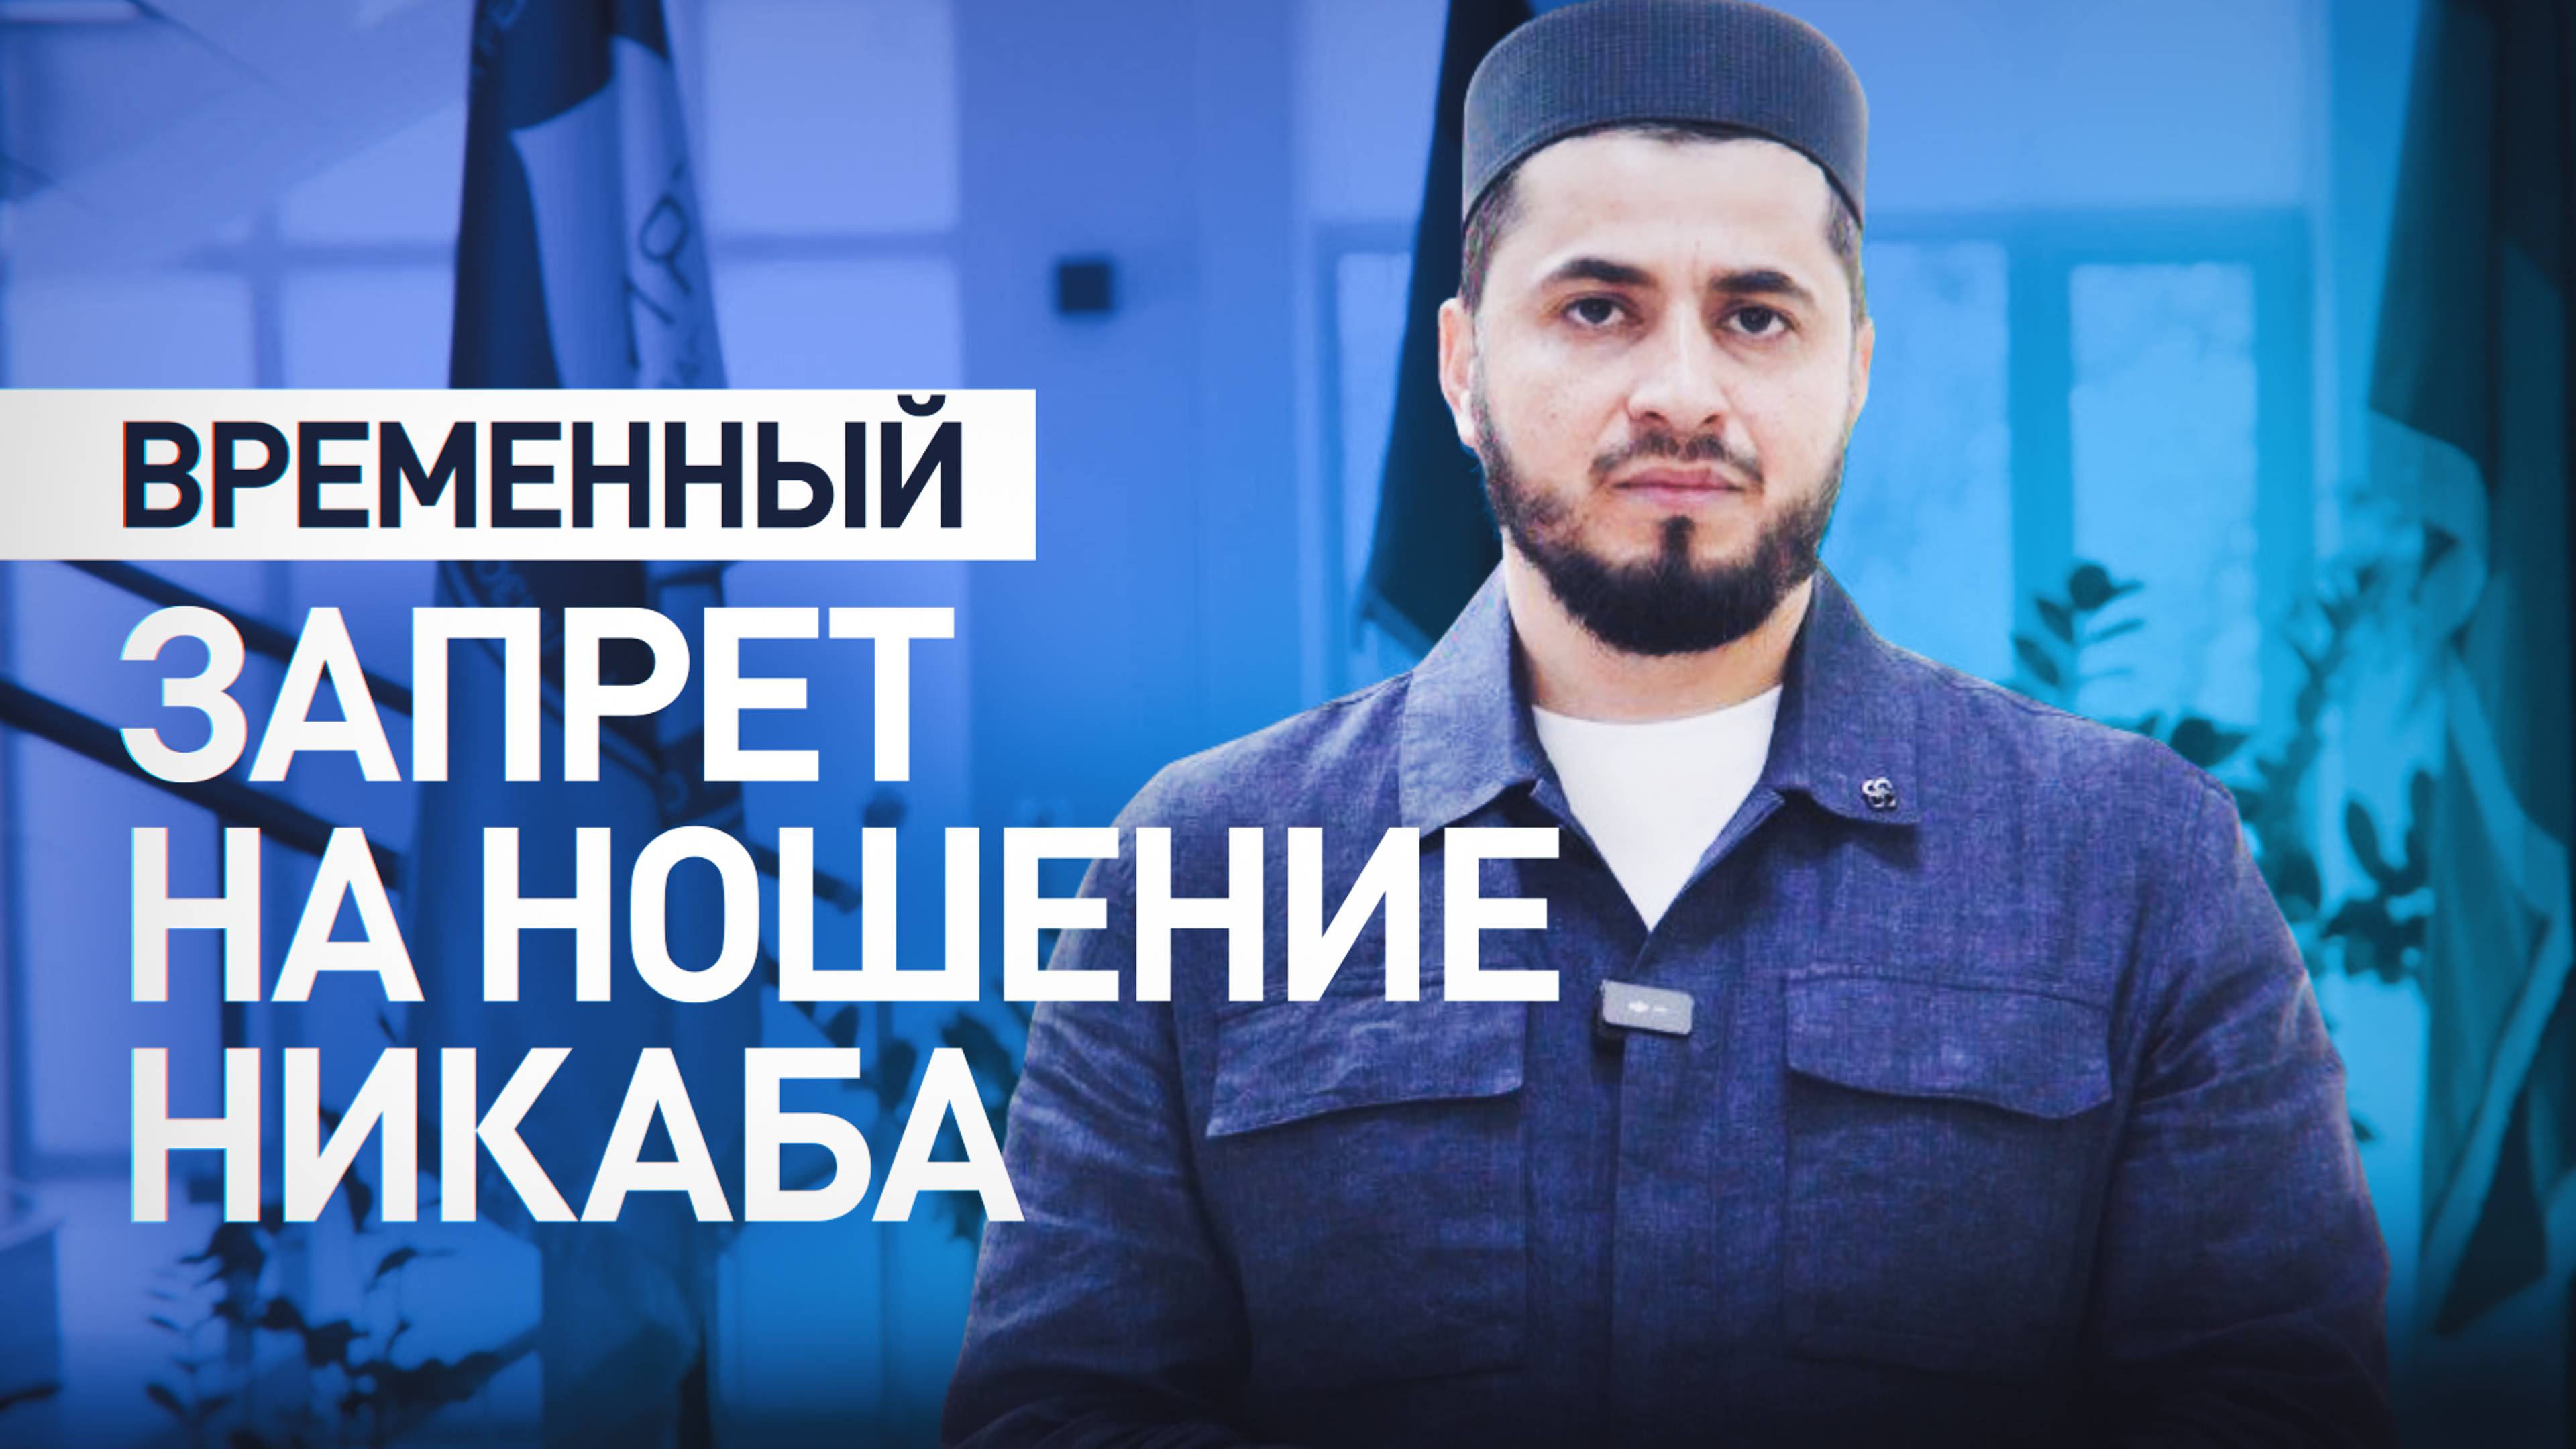 Муфтият Дагестана ввёл временный запрет никаба — видео